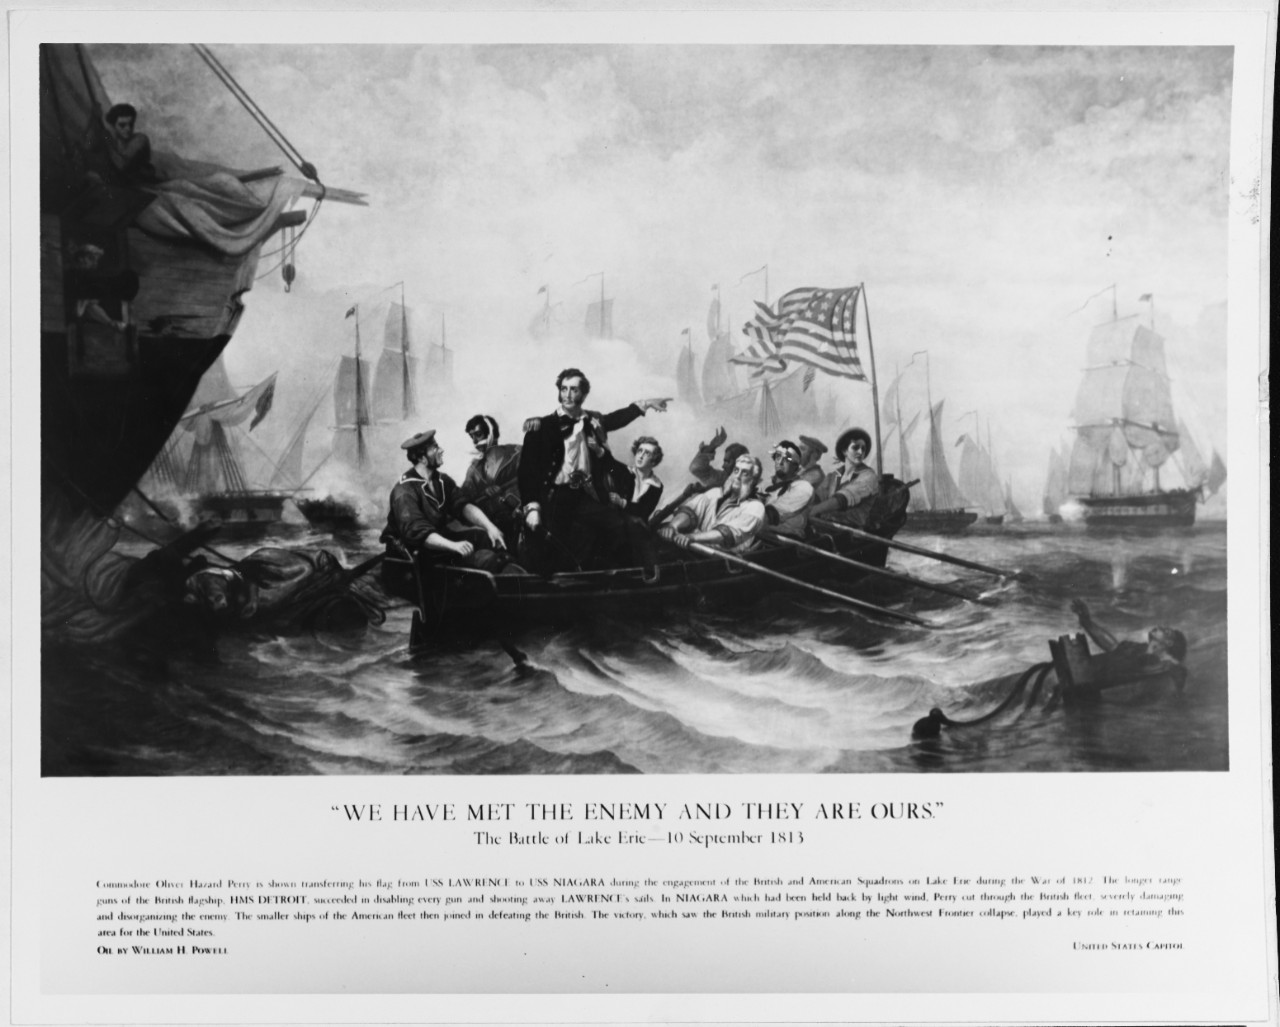 The Battle of Lake Erie, 10 September 1813